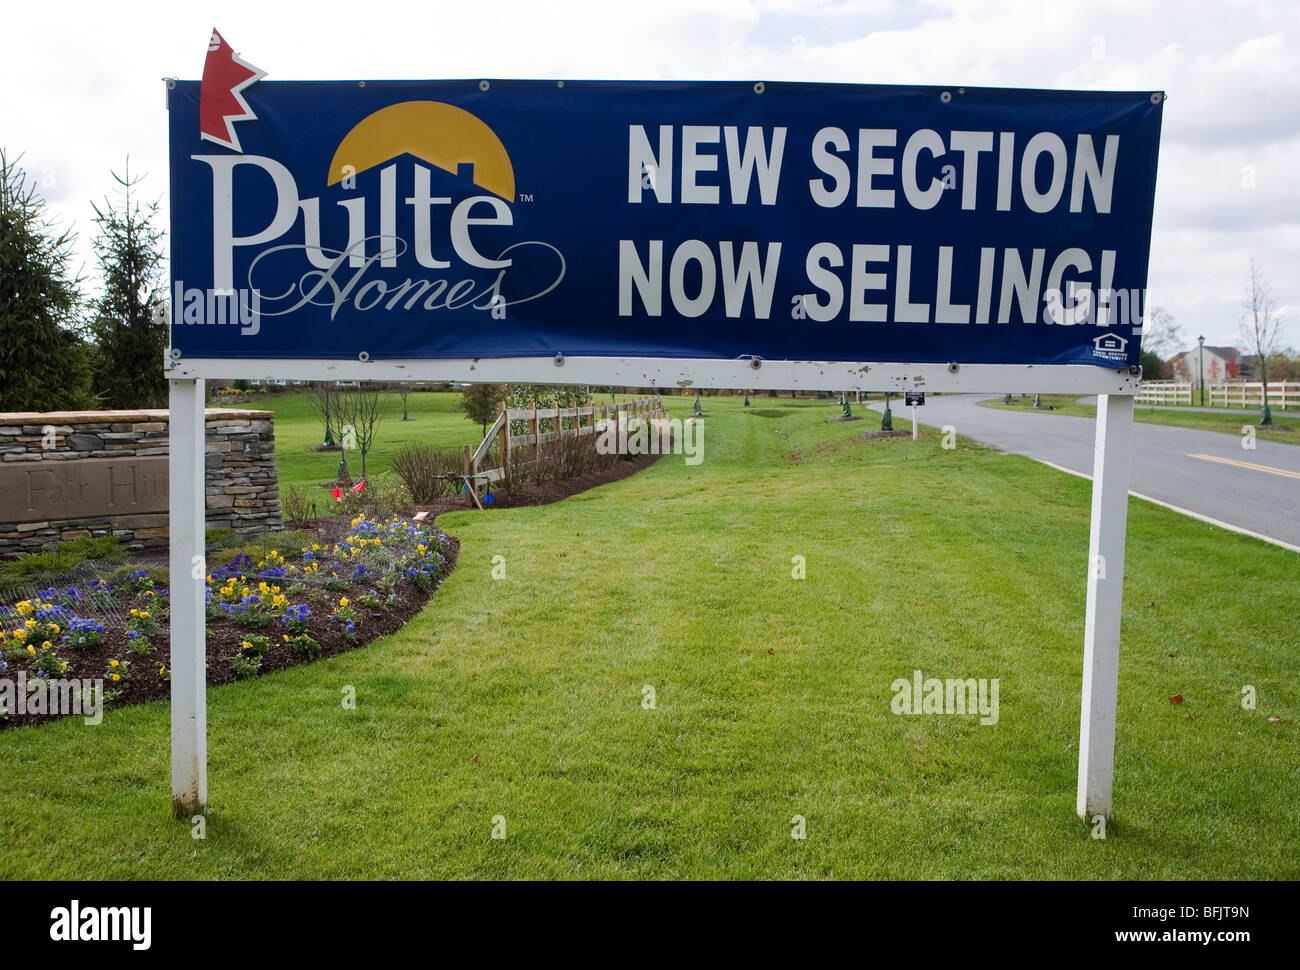 Eine Gemeinschaft der Pulte Homes in vorstädtischen Maryland. Stockfoto